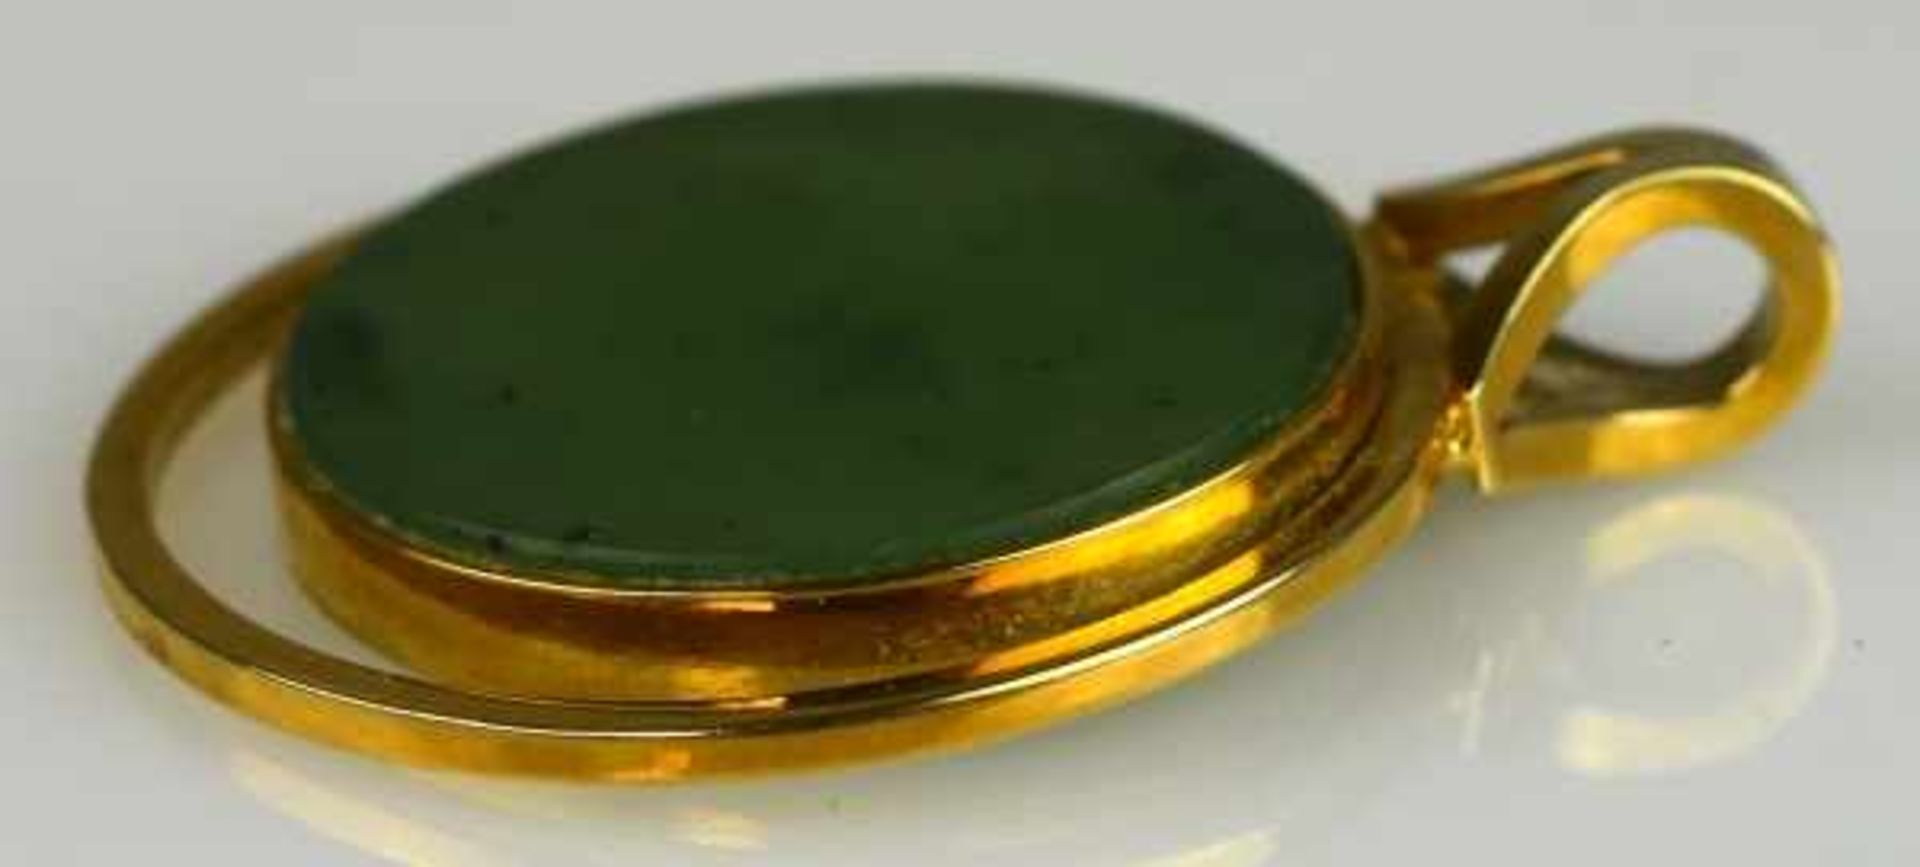 JADE-ANHÄNGER runde Jadescheibe in runder Gelbgoldfassung 14ct, D 24mm - Image 3 of 3